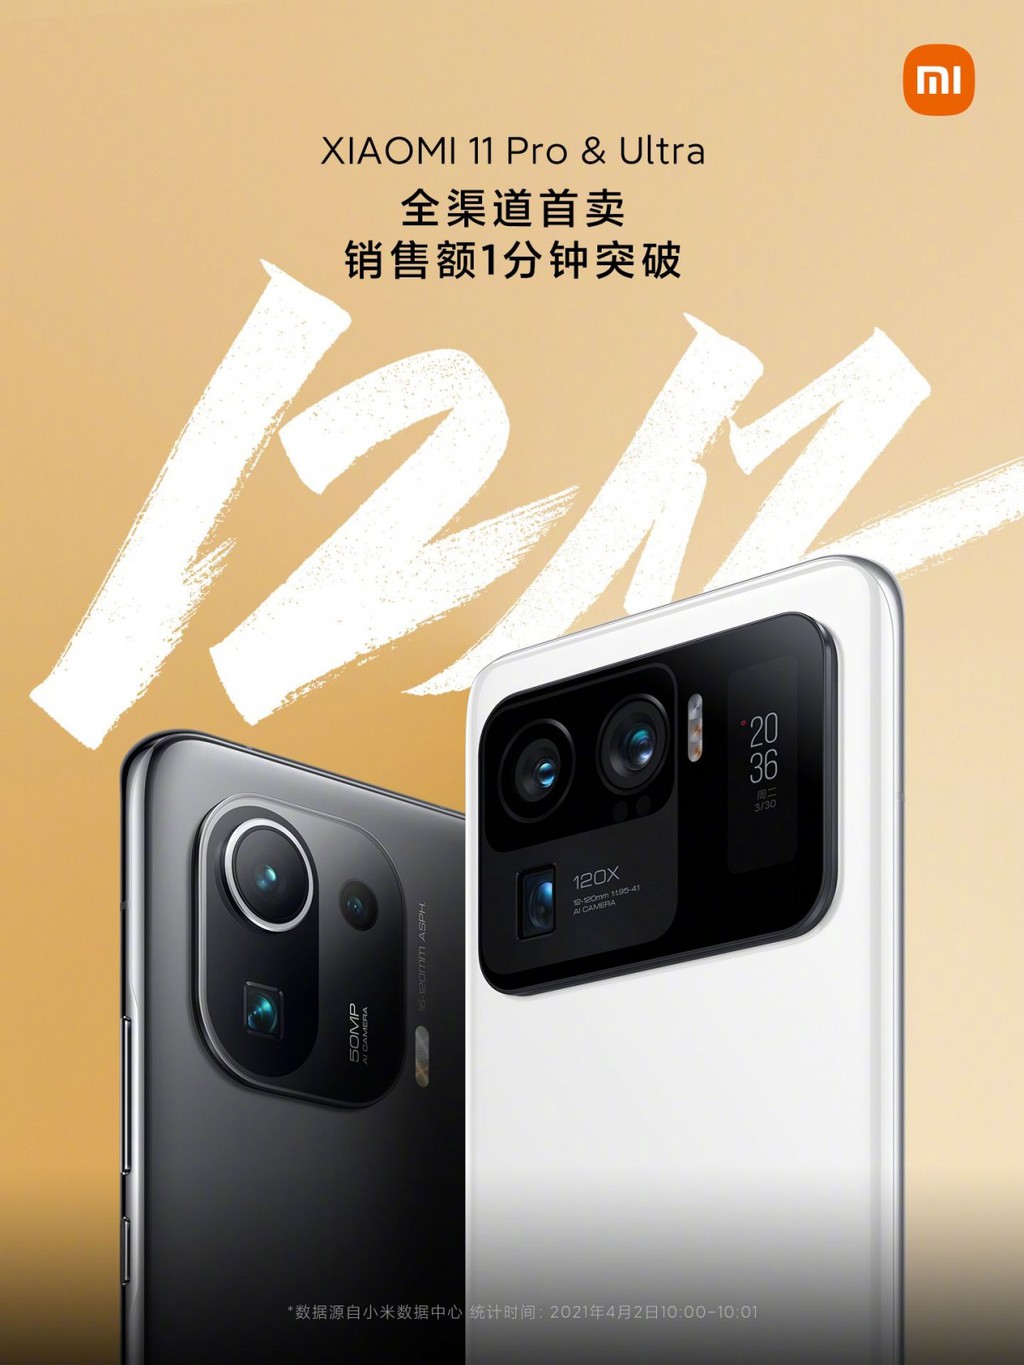 Xiaomi Mi 11 Ultra và Mi 11 Pro mang về 1,2 tỷ nhân dân tệ trong 1 phút ảnh 1